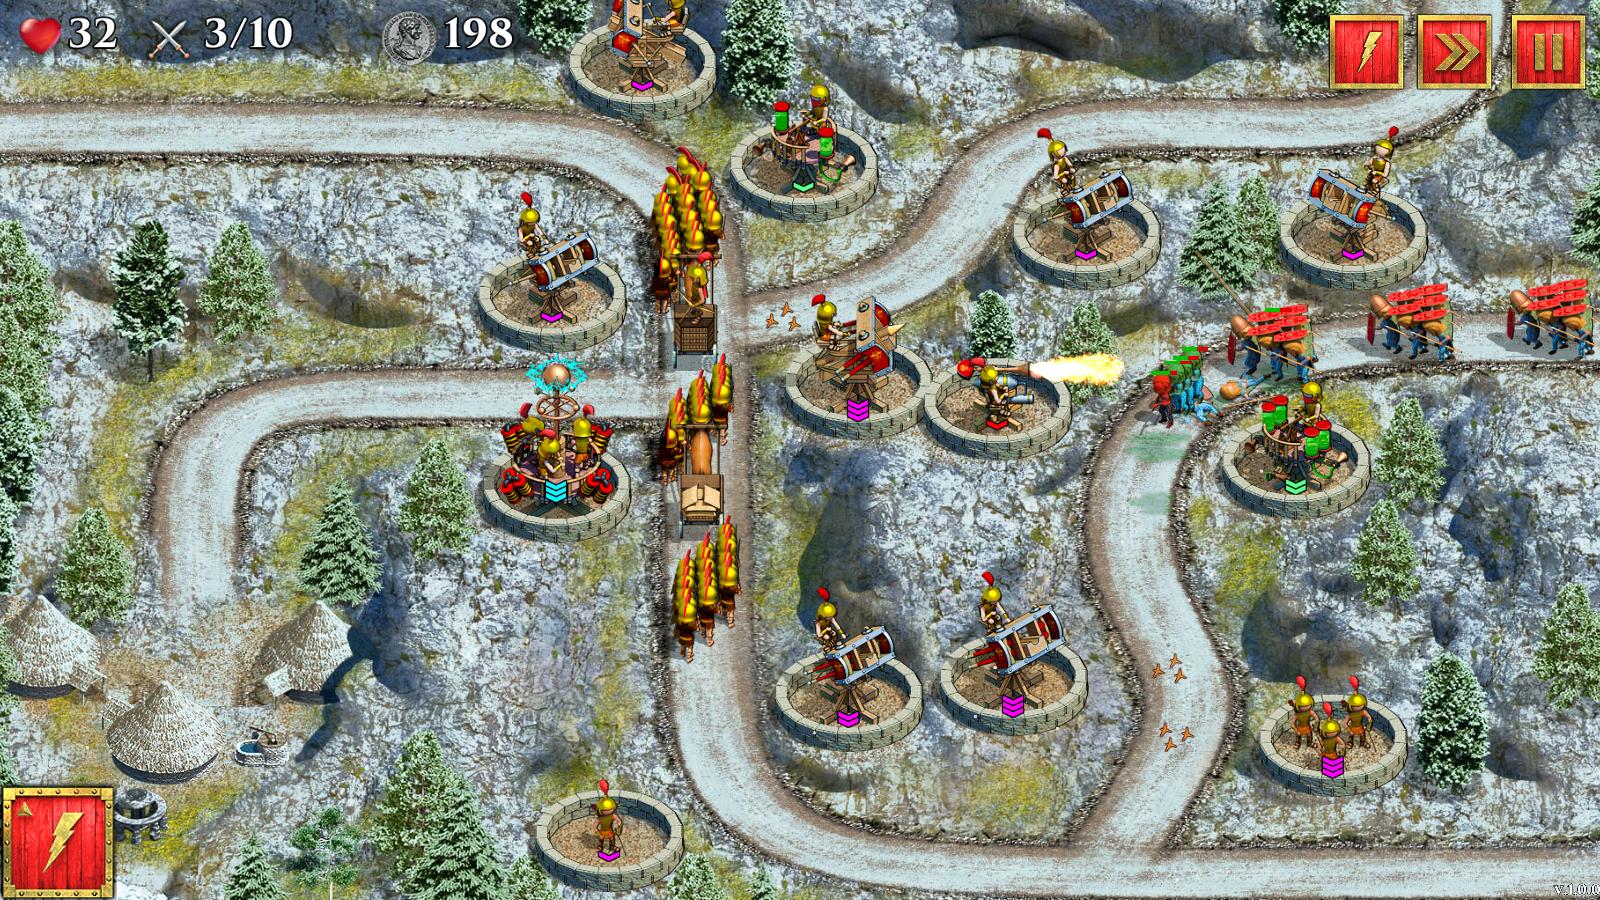 Defense of Roman Britain screenshot